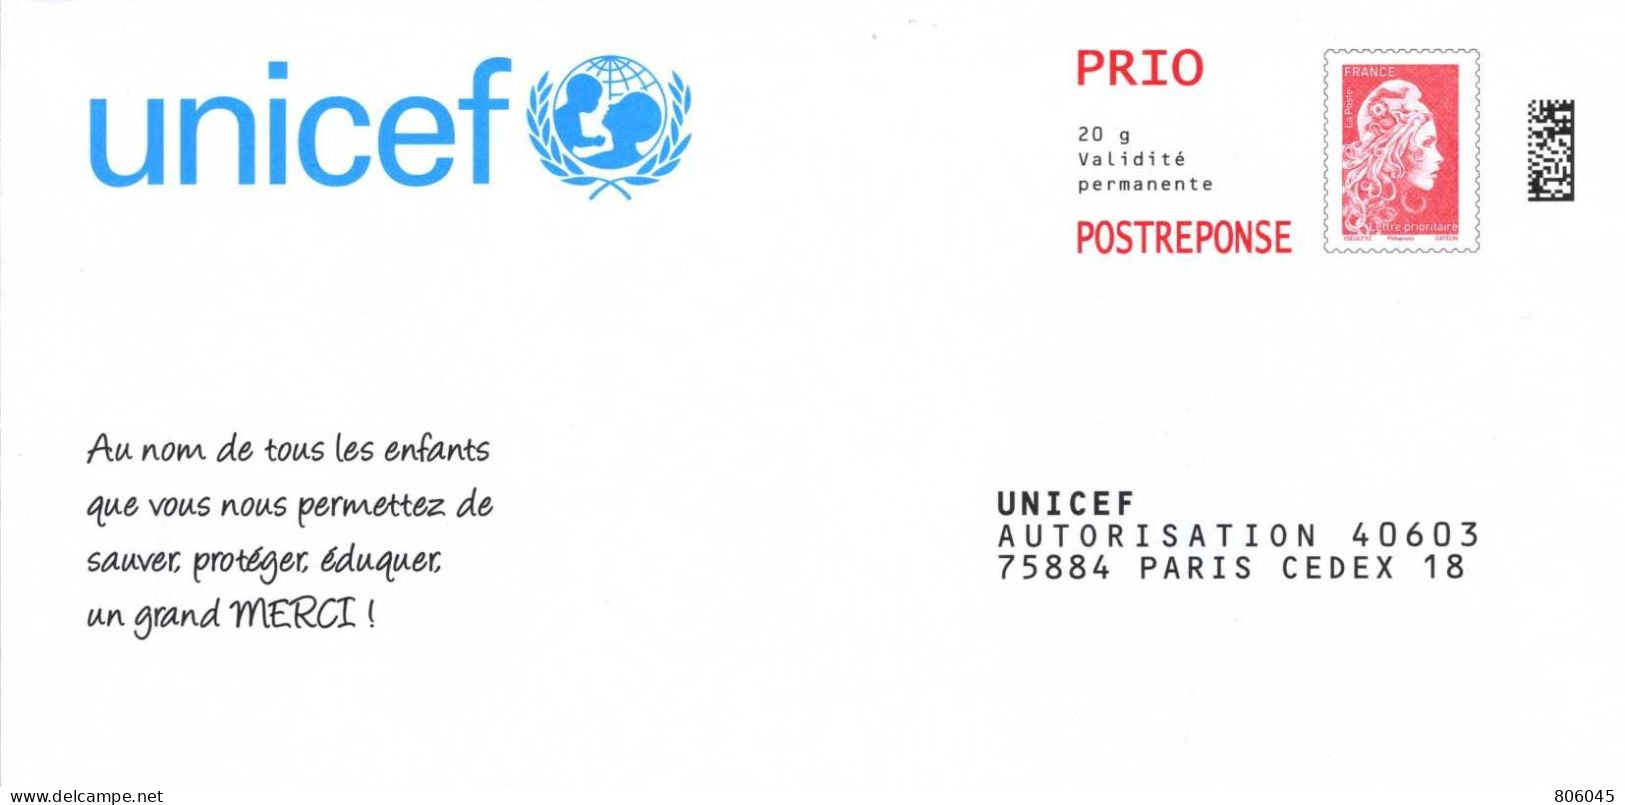 Prêt à Poster Réponse U.N.I.C.E.F. - Prêts-à-poster:reply